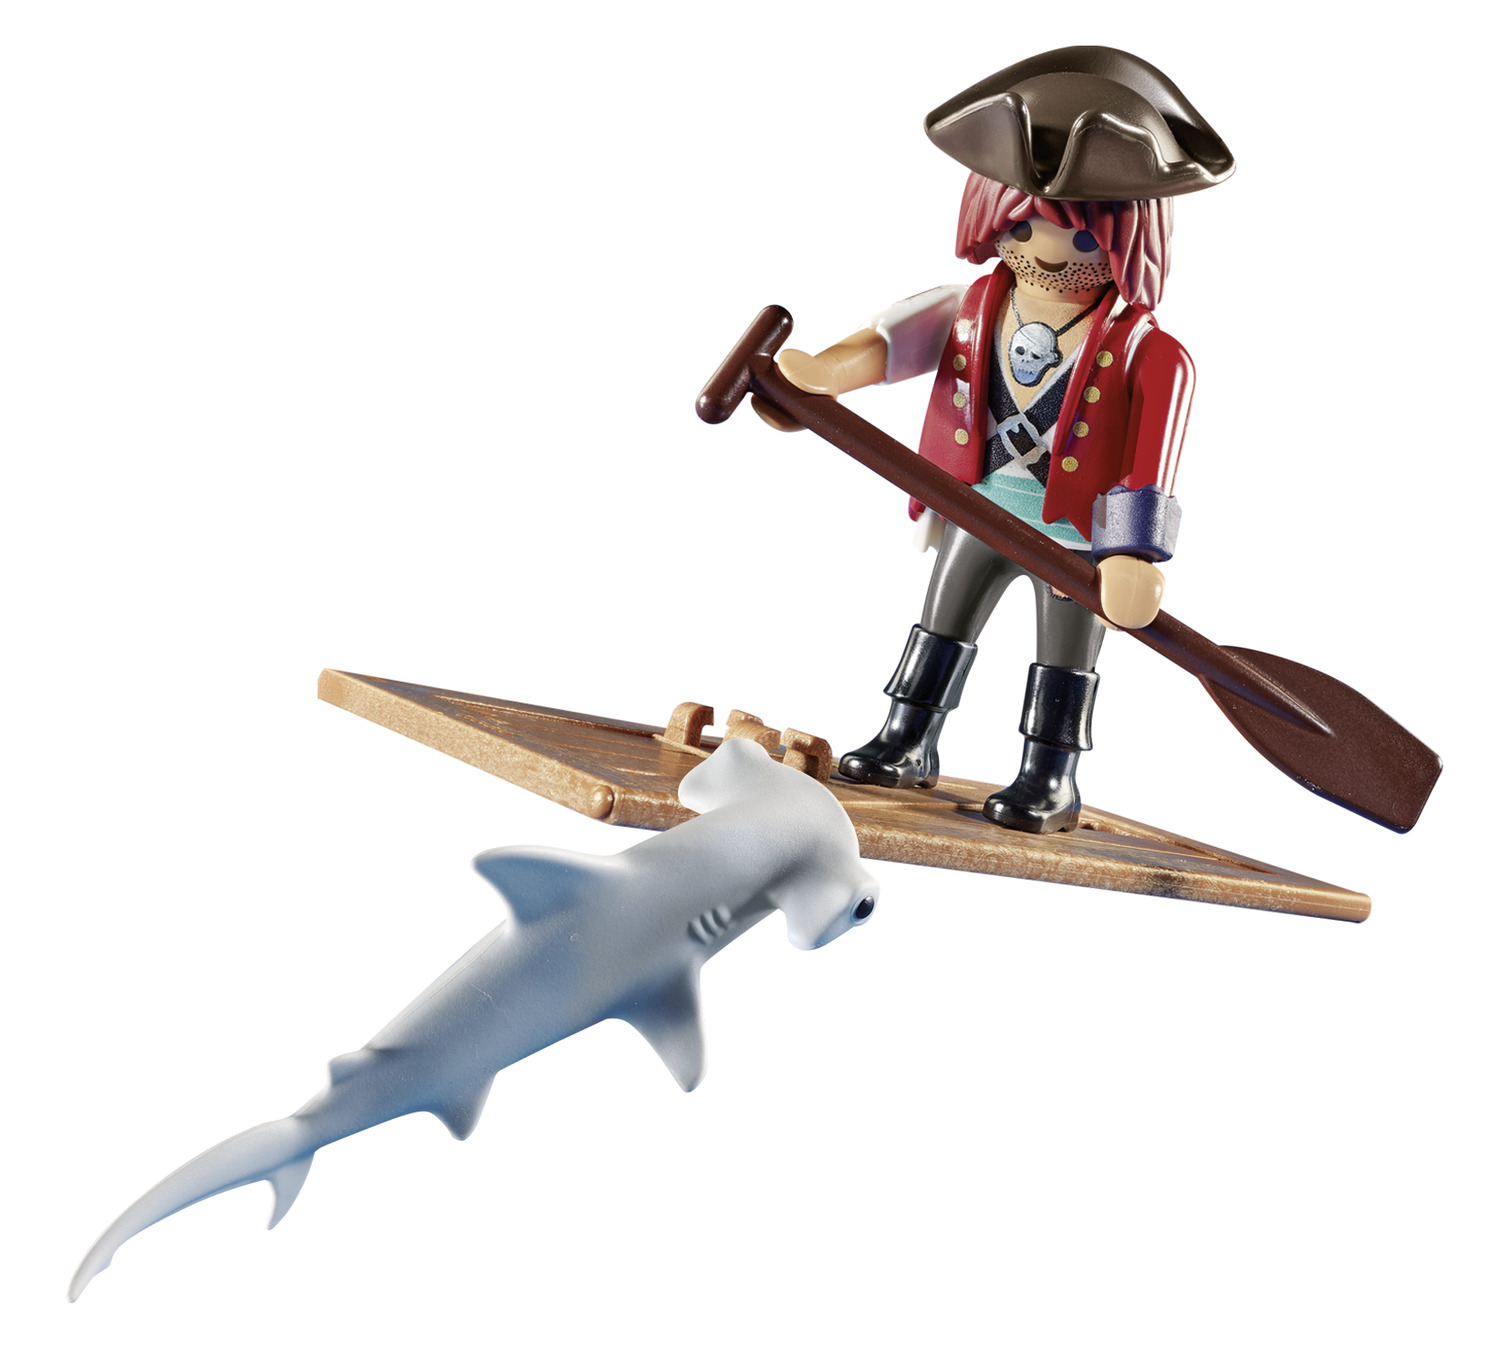 Playmobil - Πειρατής Με Σχεδία Και Σφυροκέφαλος Καρχαρίας